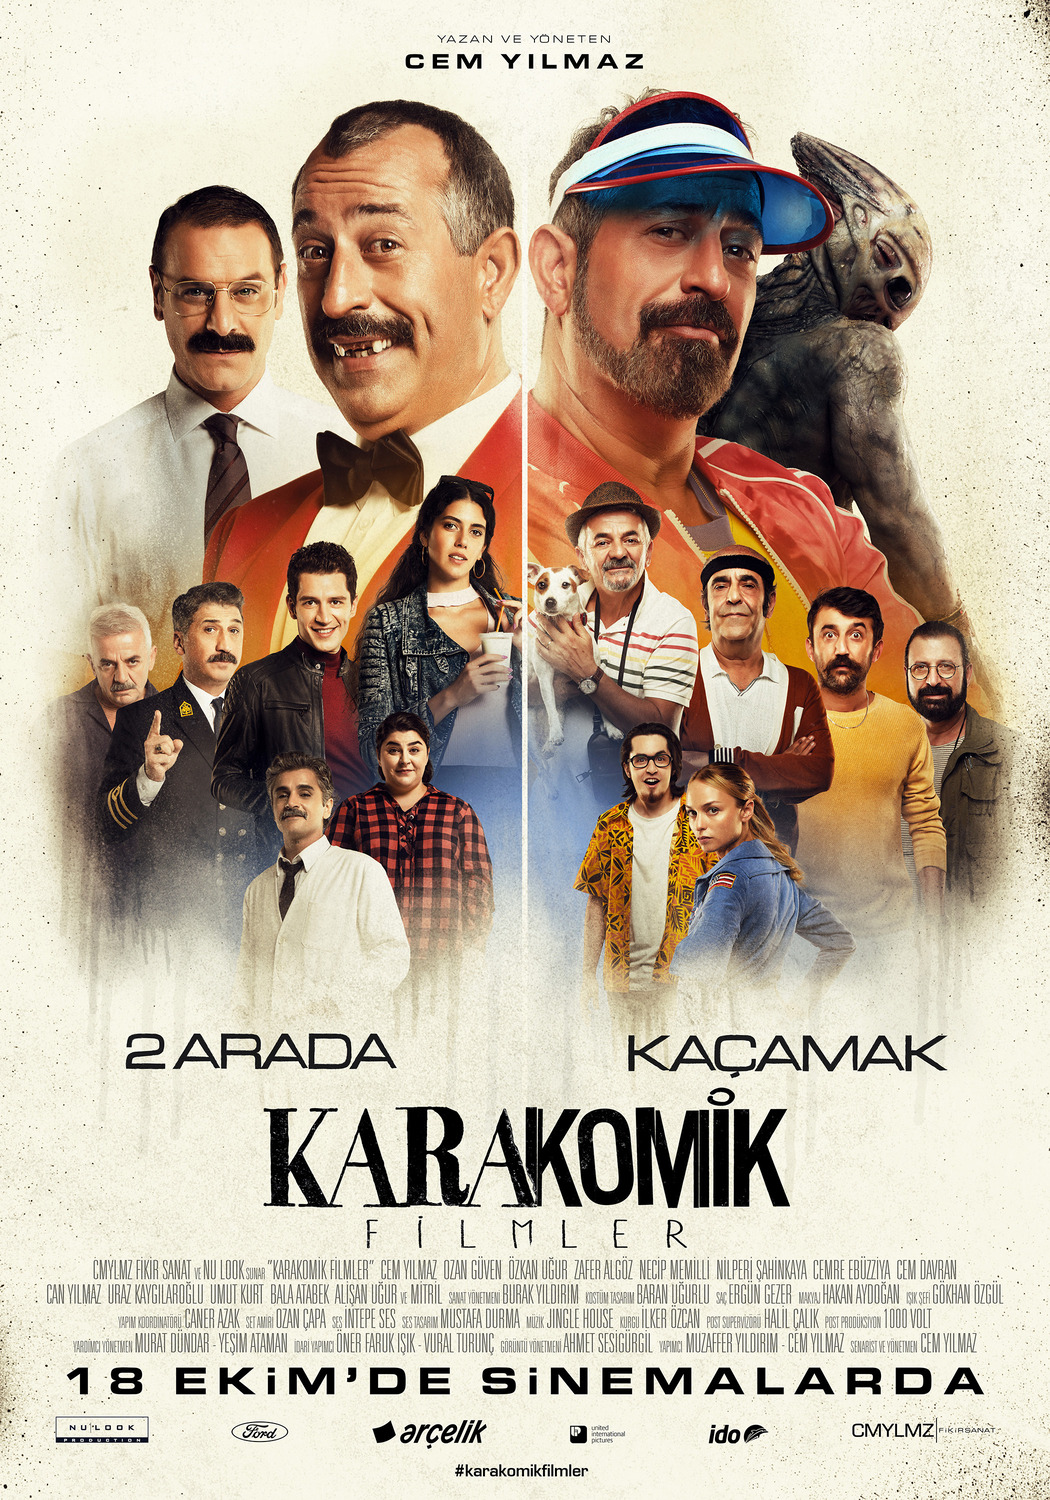 Extra Large Movie Poster Image for Karakomik Filmler (#9 of 9)